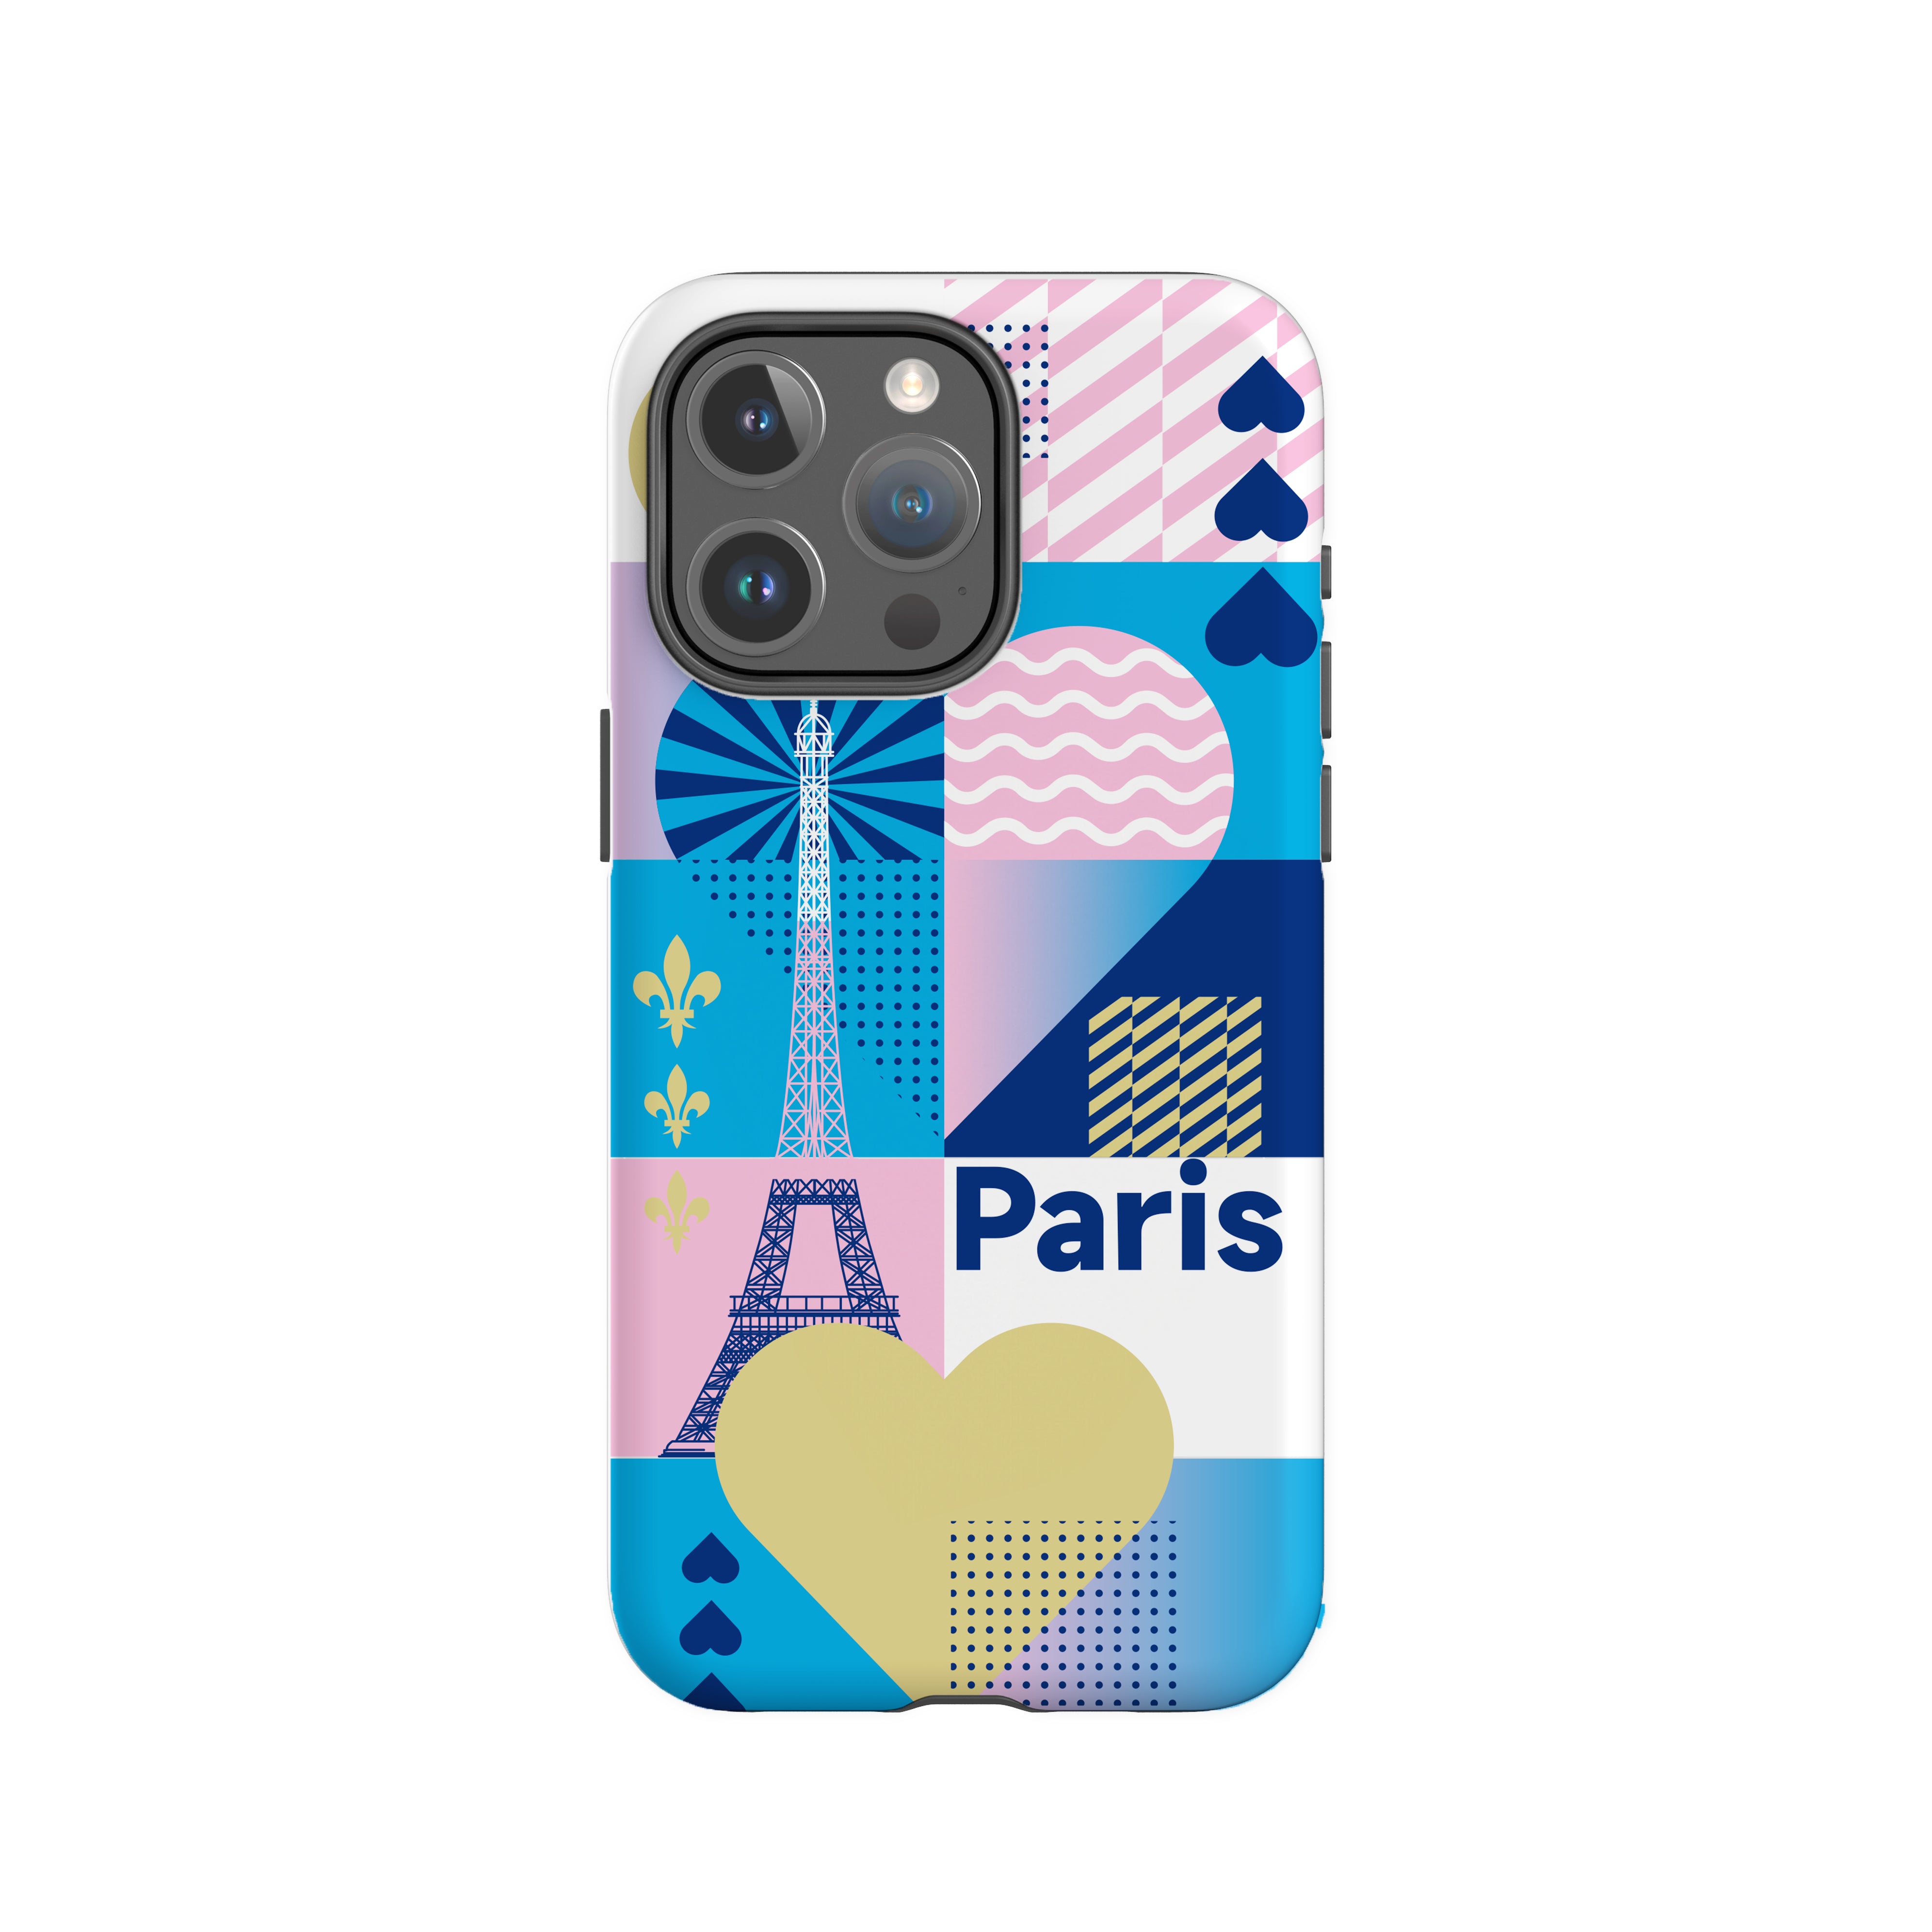 CASEKOO City シリーズ iPhone ケース - パリ